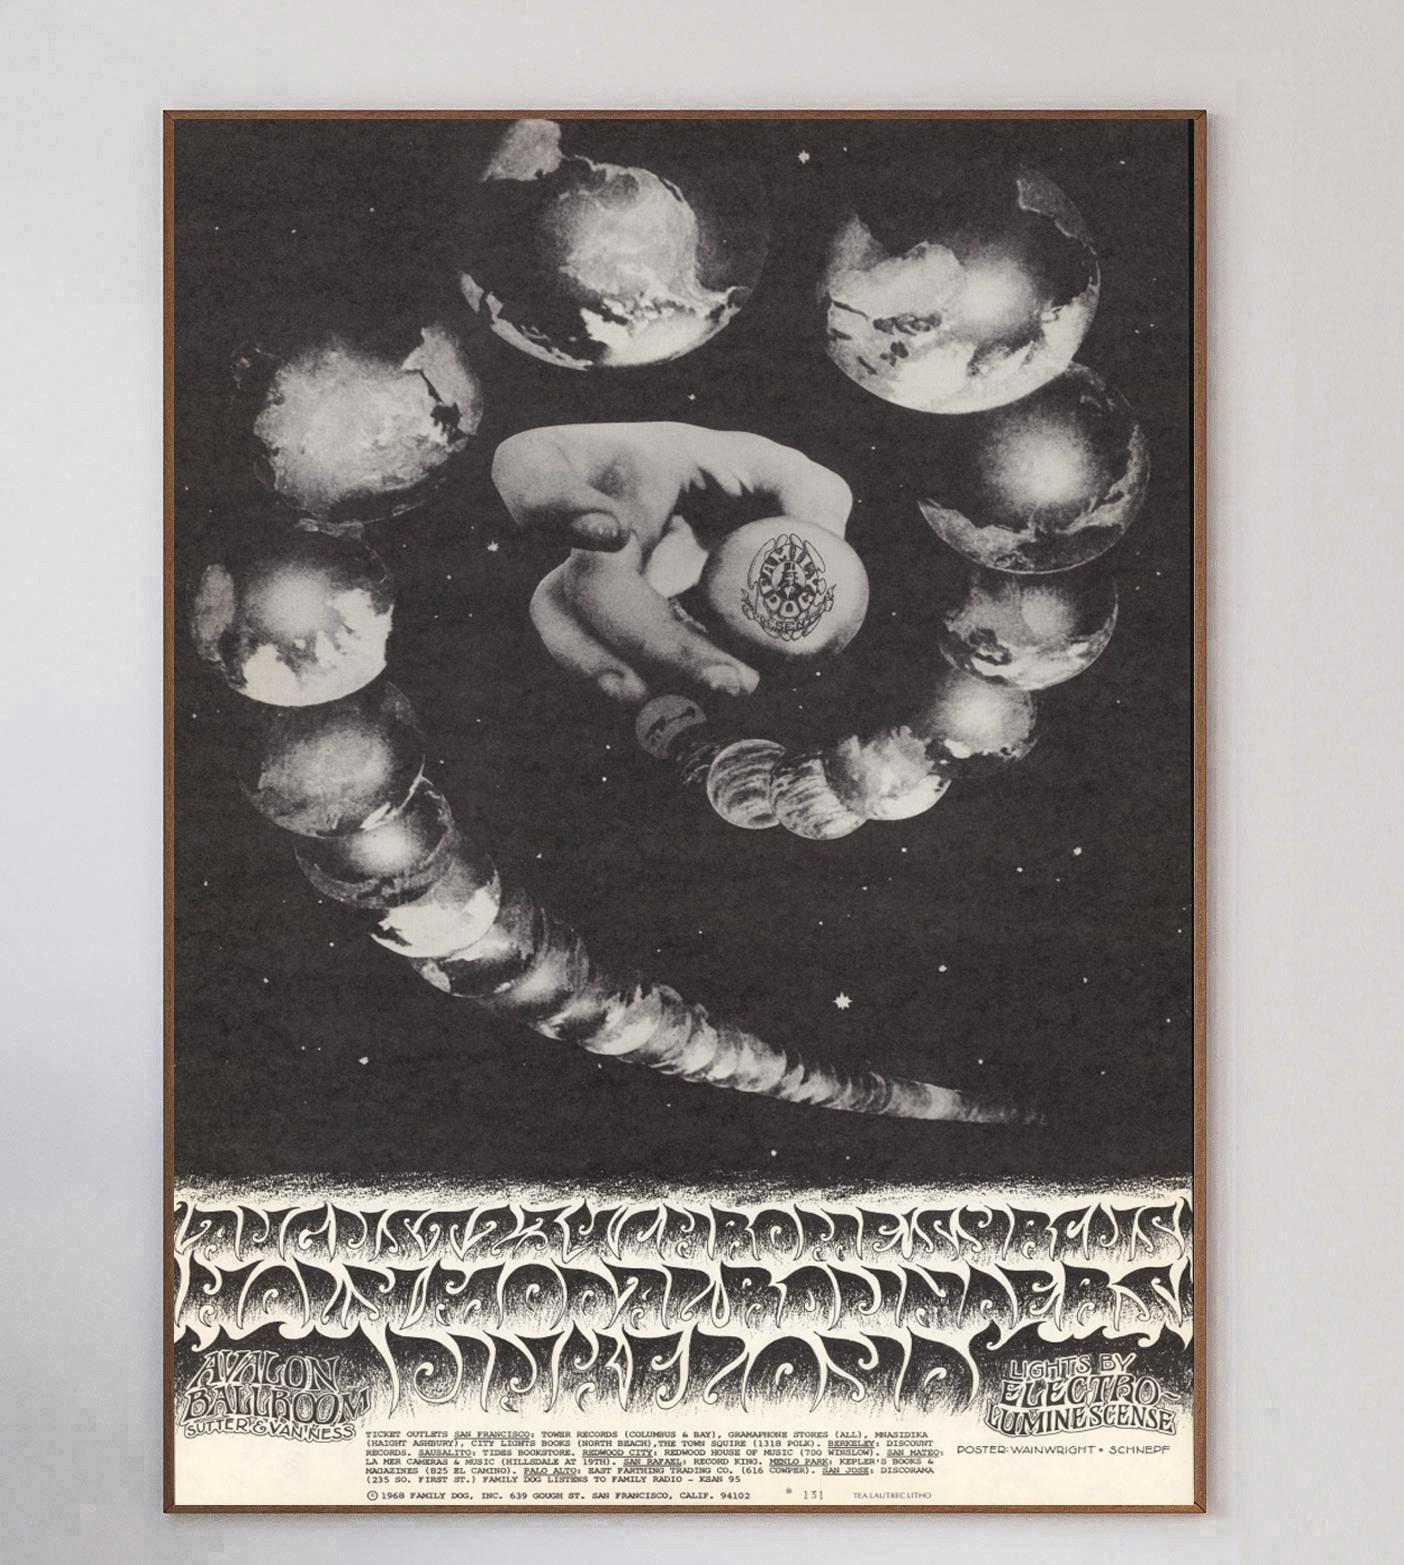 Conçue par les artistes Jerry Wainwright et Bob Schnepf, cette magnifique affiche a été créée en 1968 pour promouvoir un concert de Pink Floyd à l'Avalon Ballroom de San Francisco. Les événements organisés par Bill Graham comme celui-ci étaient bien